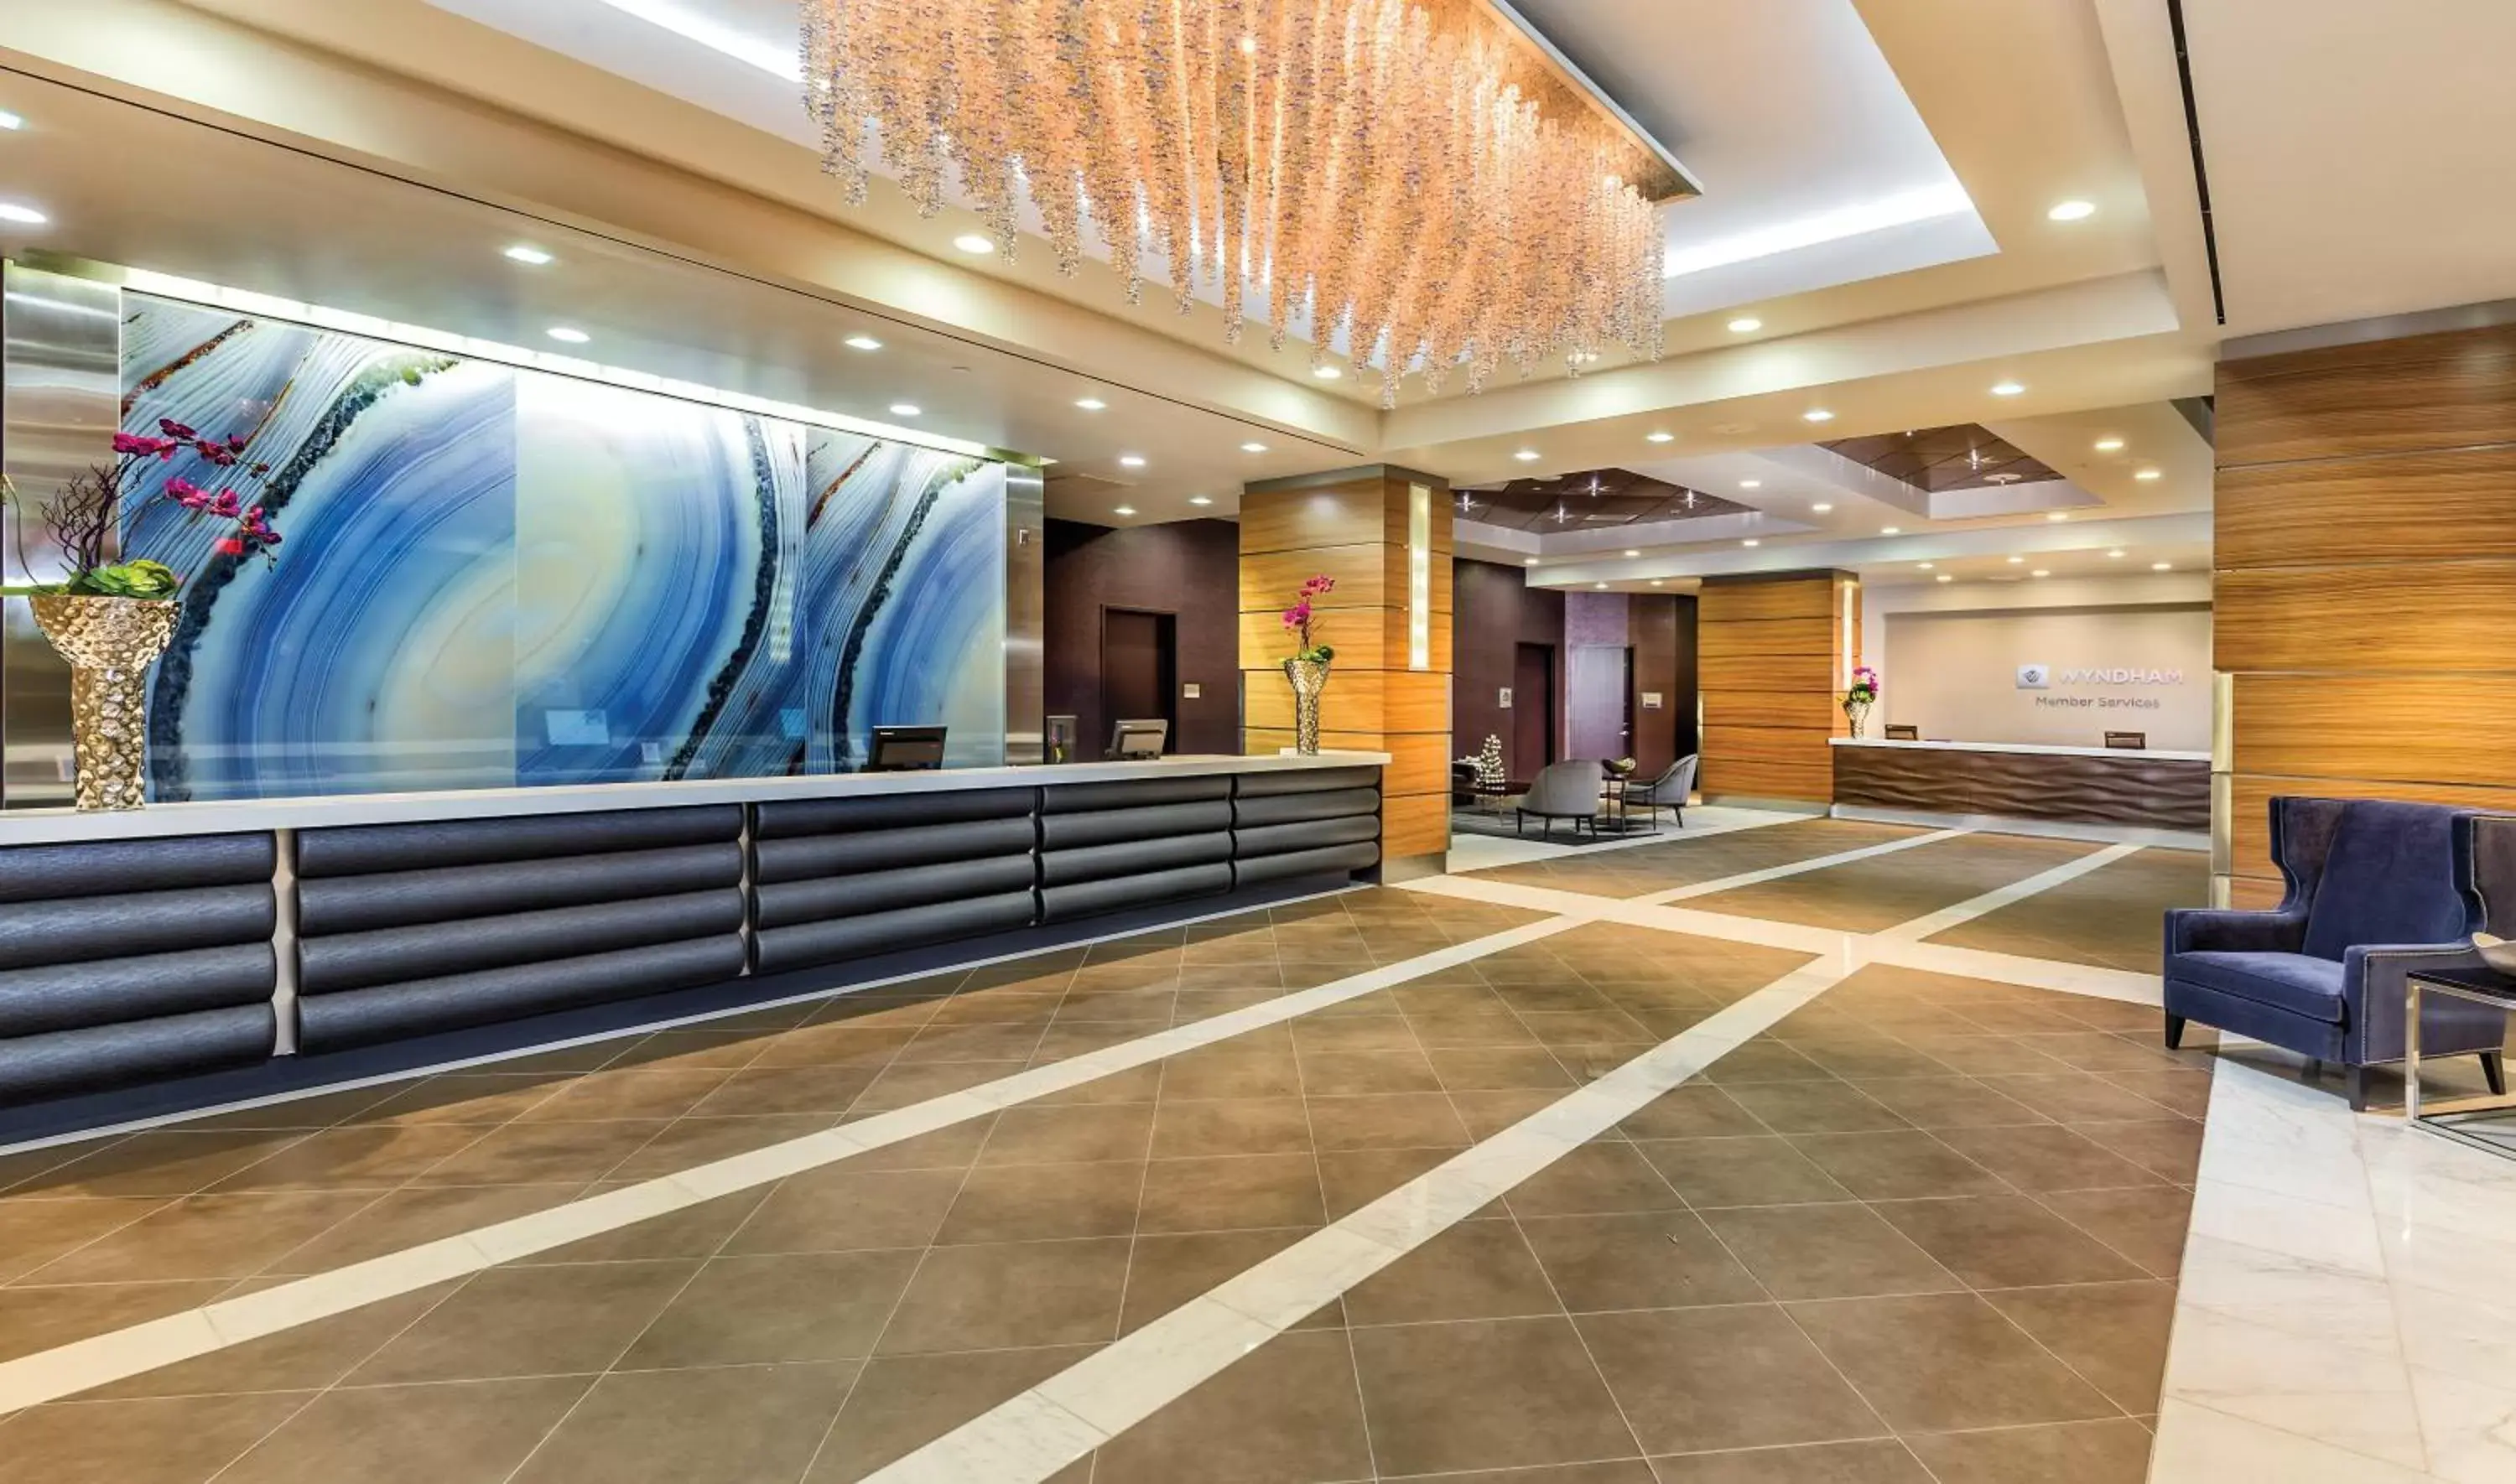 Lobby or reception, Lobby/Reception in Club Wyndham Desert Blue